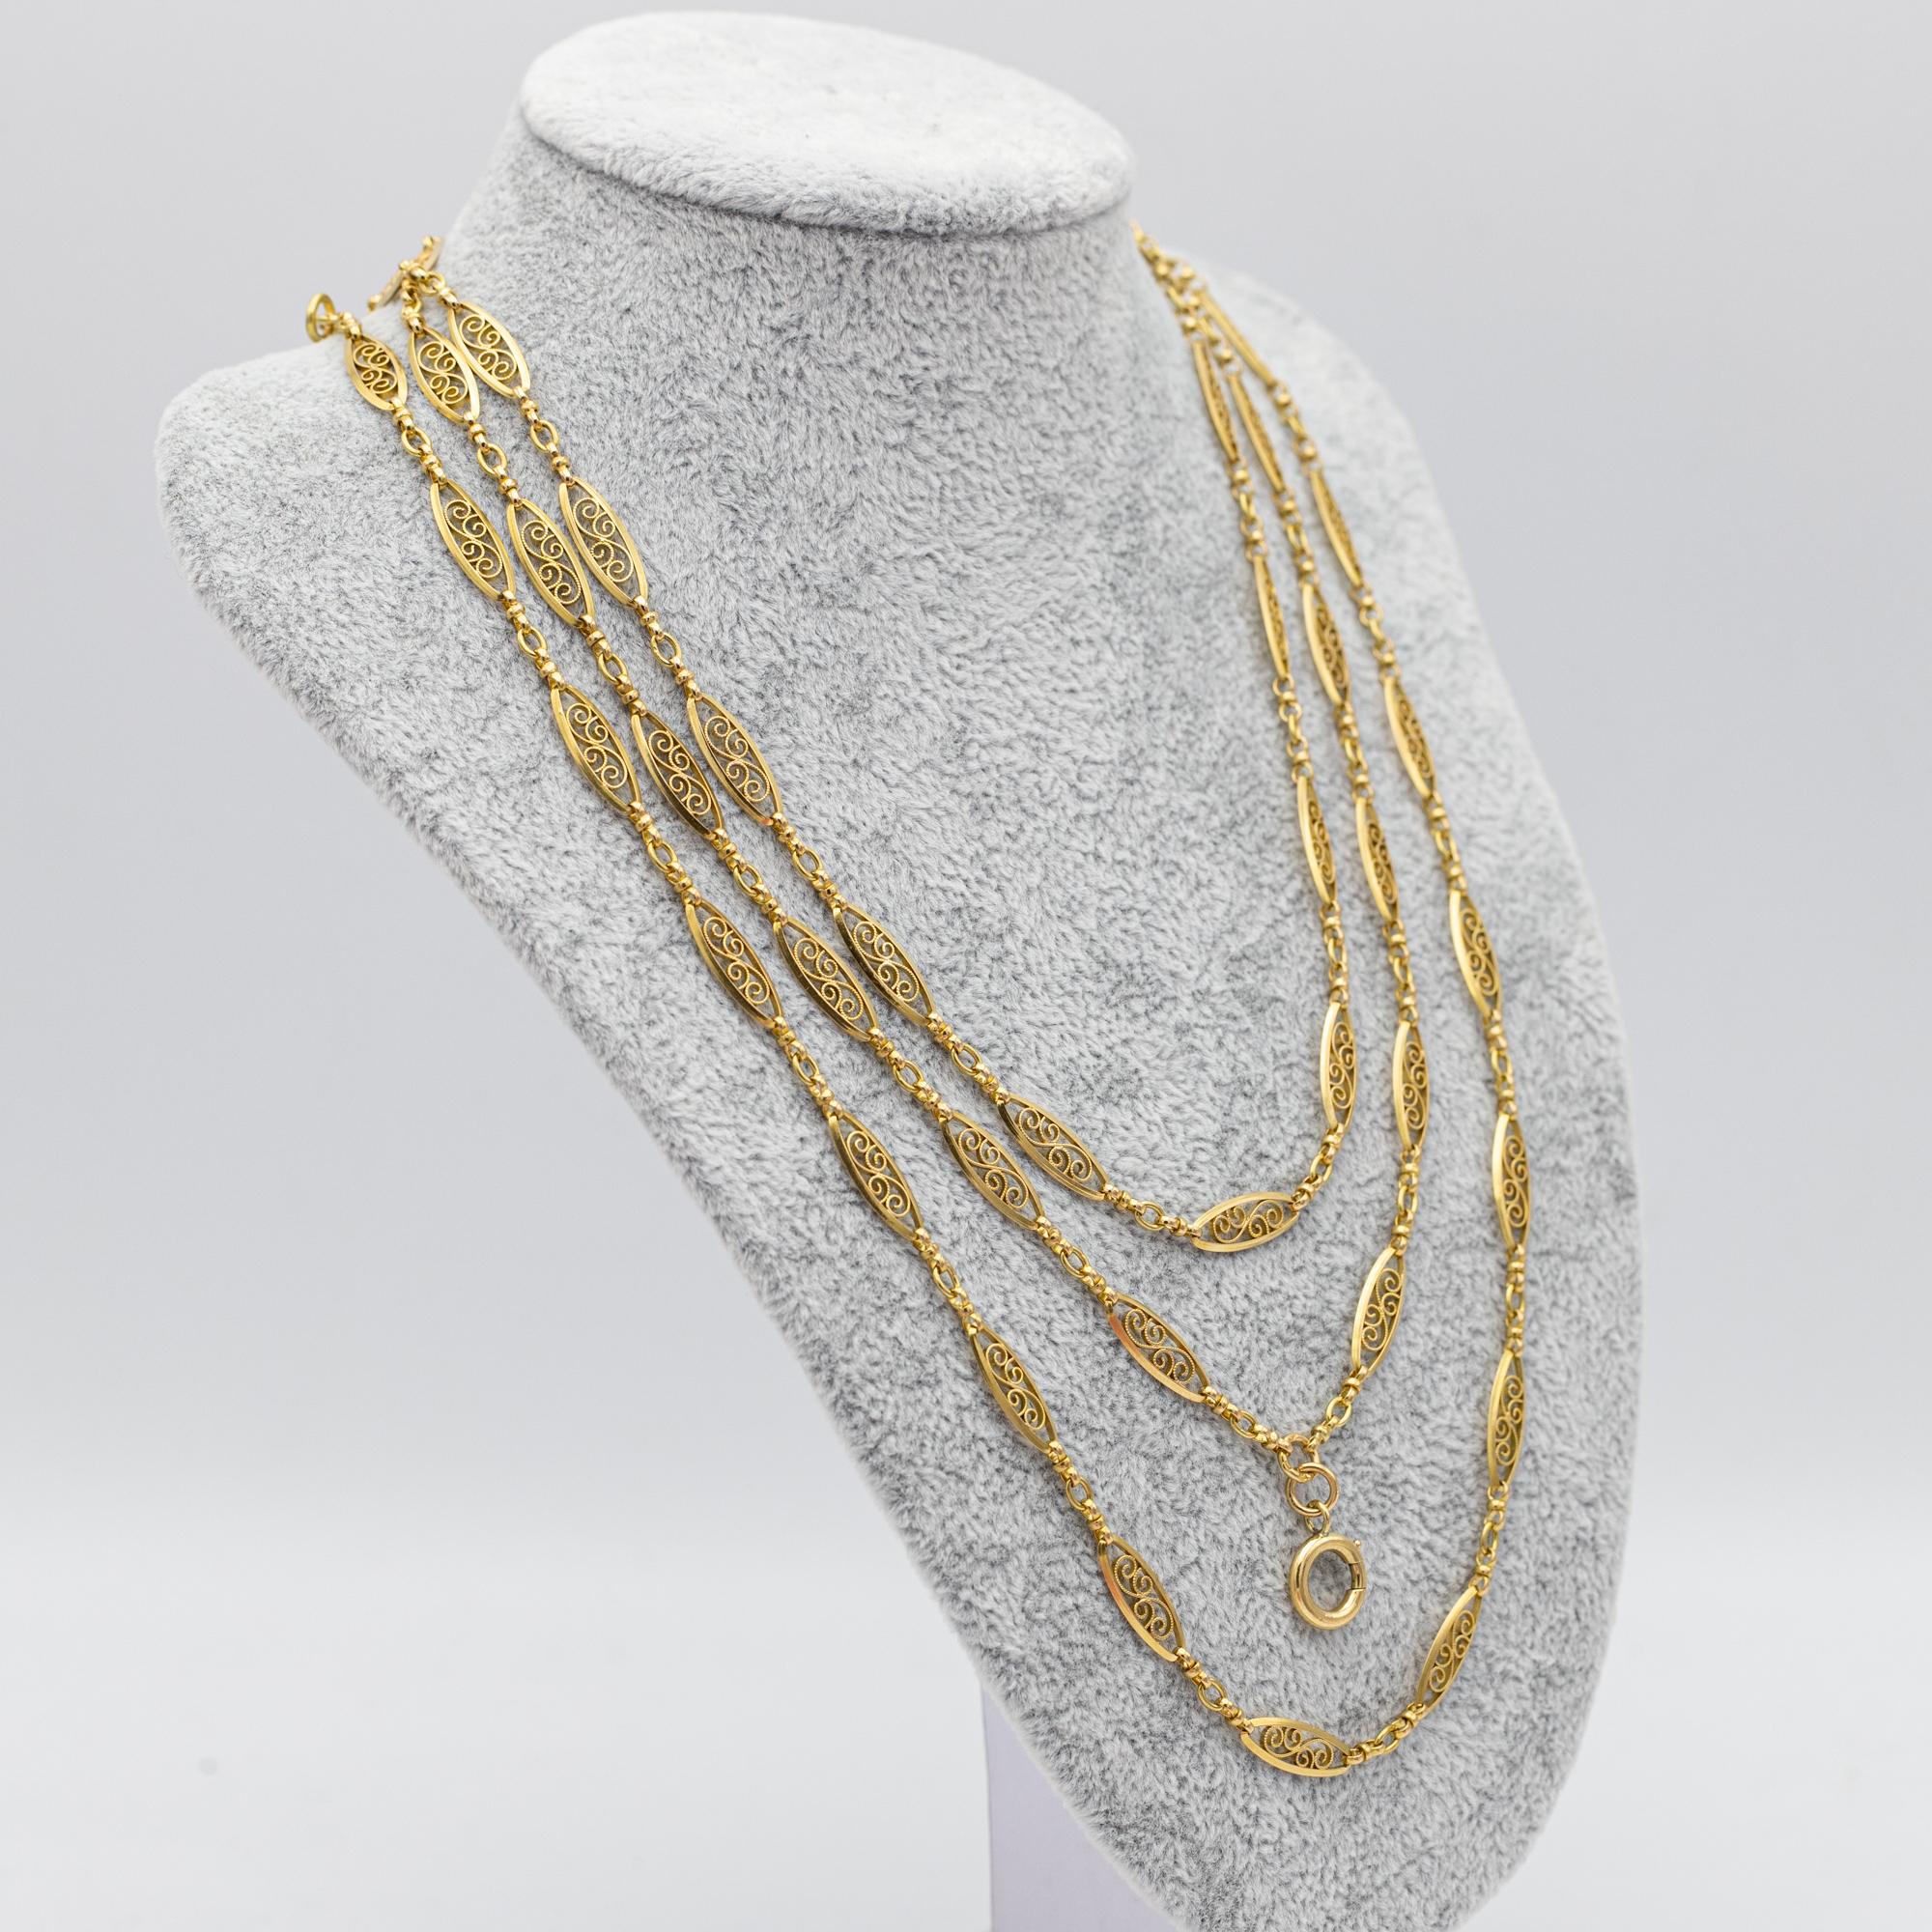 Antique 18k gold Sautoir necklace, 155cm long guard, Victorian double rope chain 7